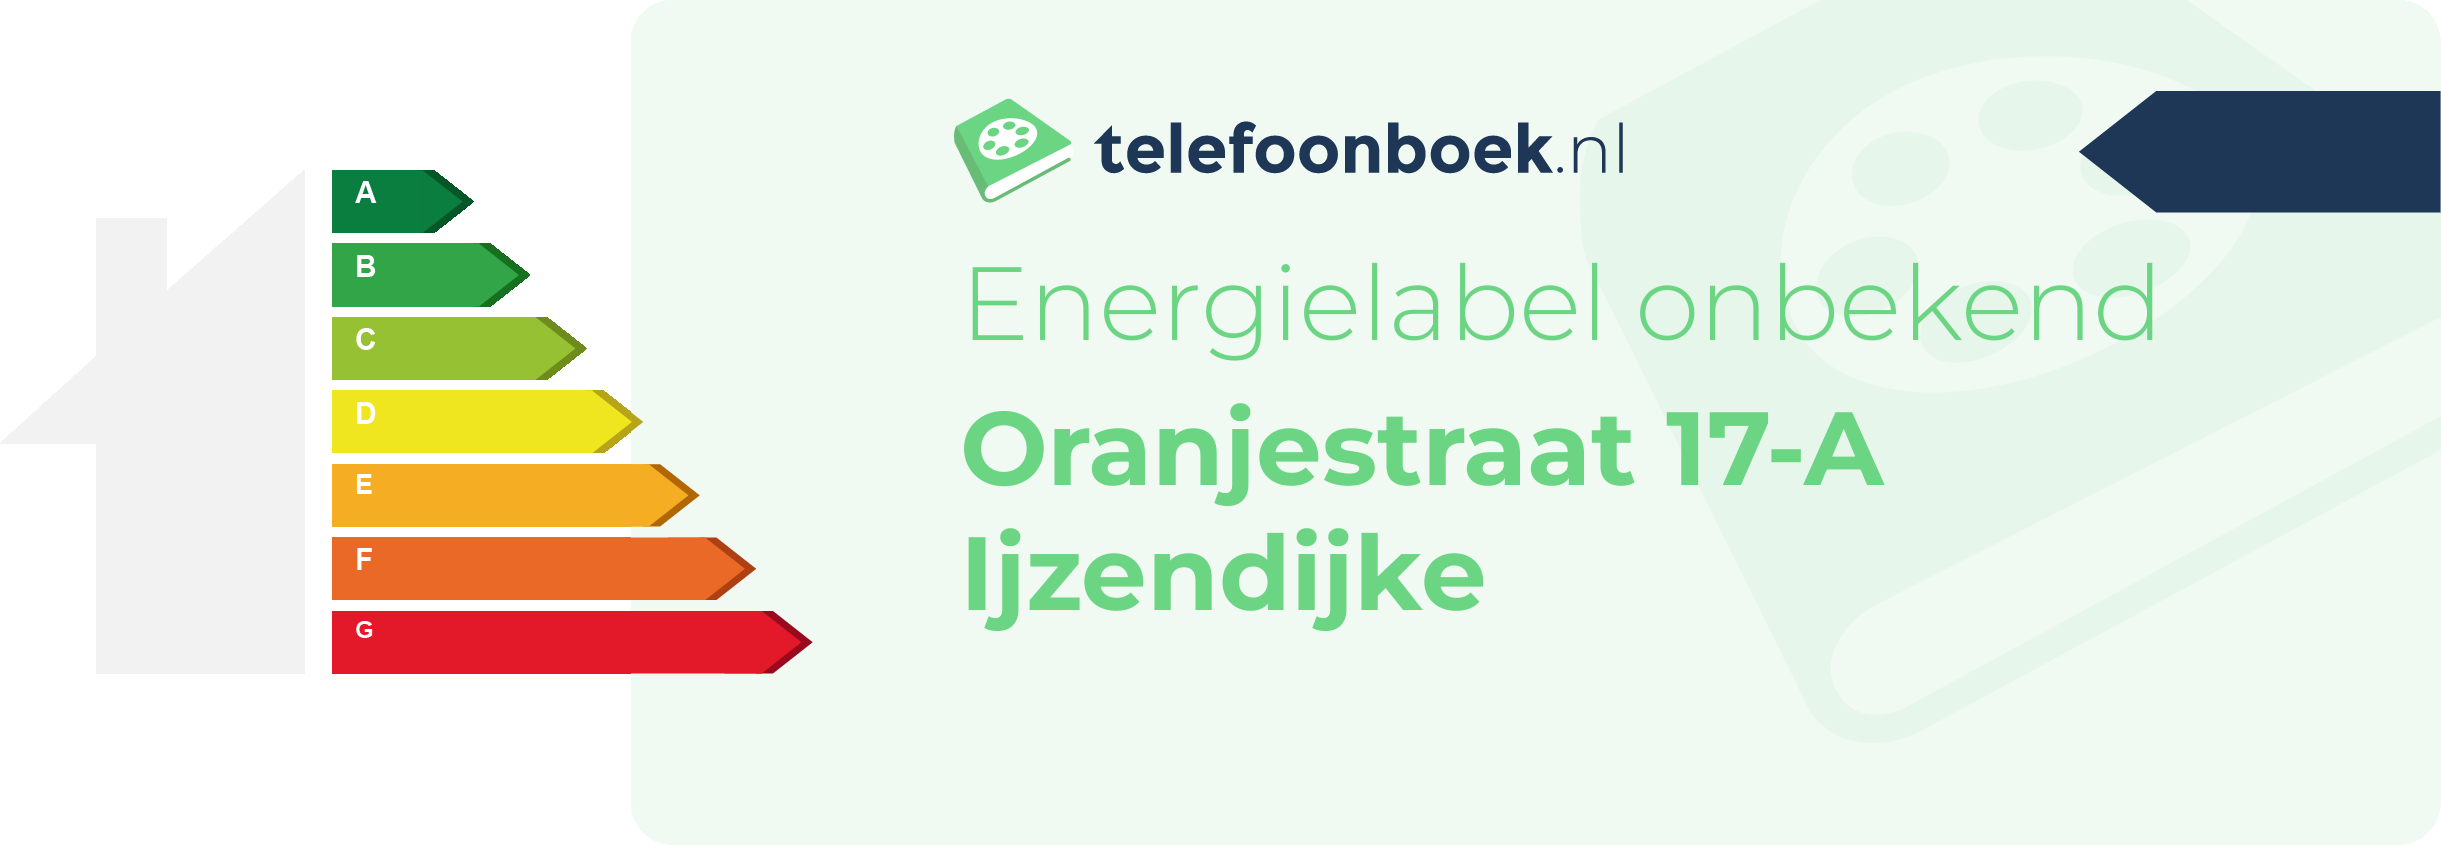 Energielabel Oranjestraat 17-A Ijzendijke